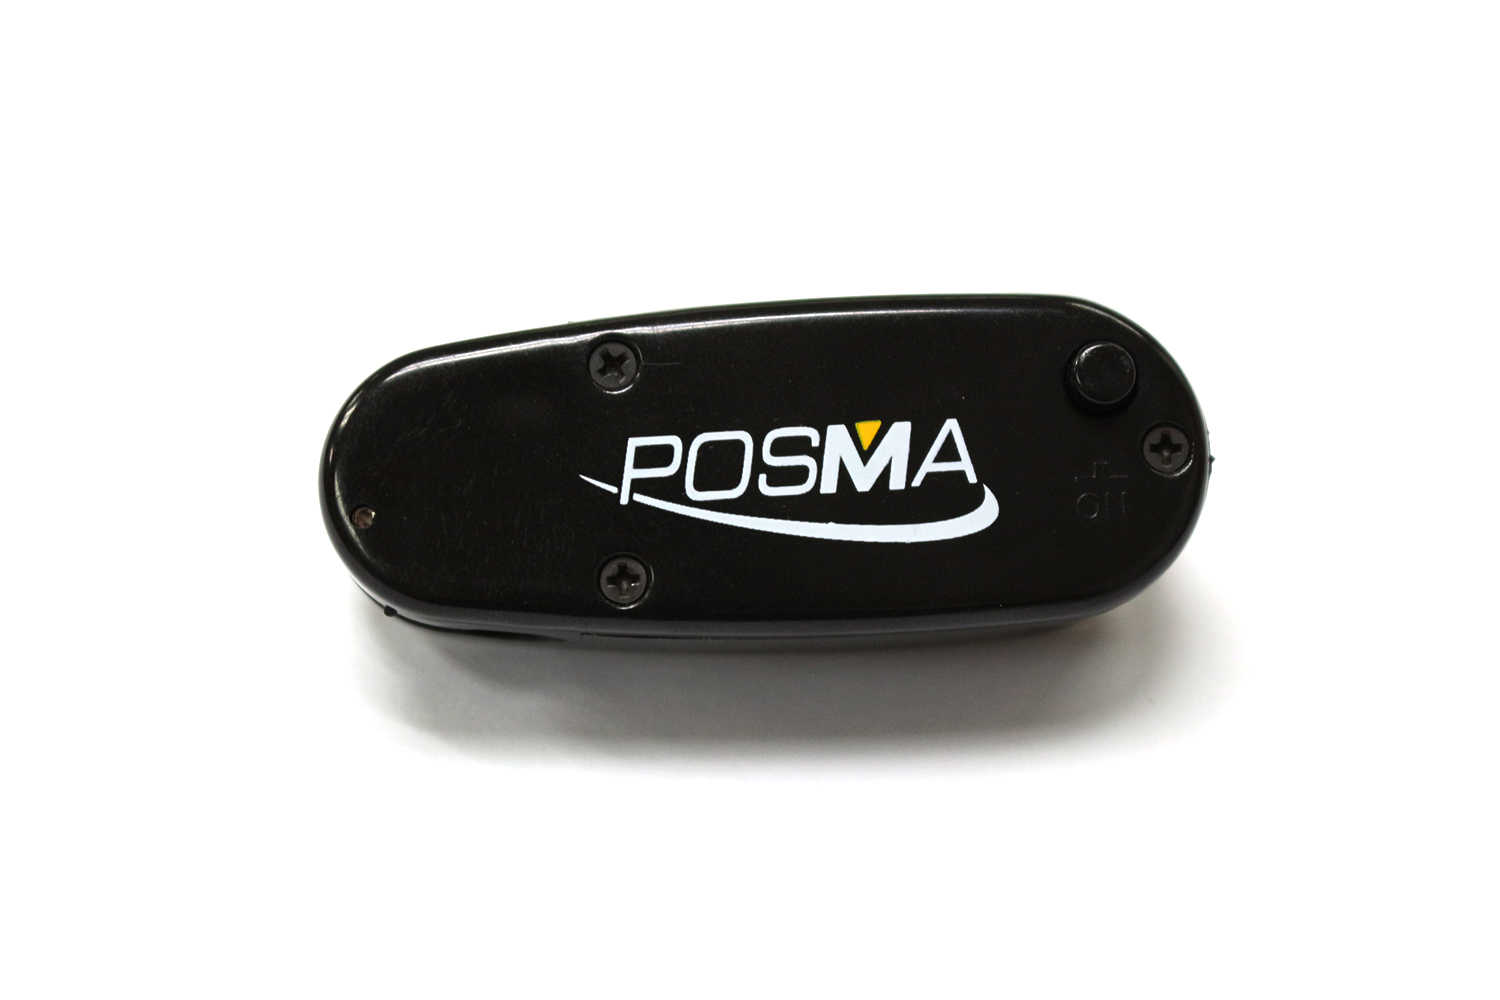 Posma LA010 推桿訓練雷射瞄準器3件特惠裝 送Posma法蘭絨束口禮品袋